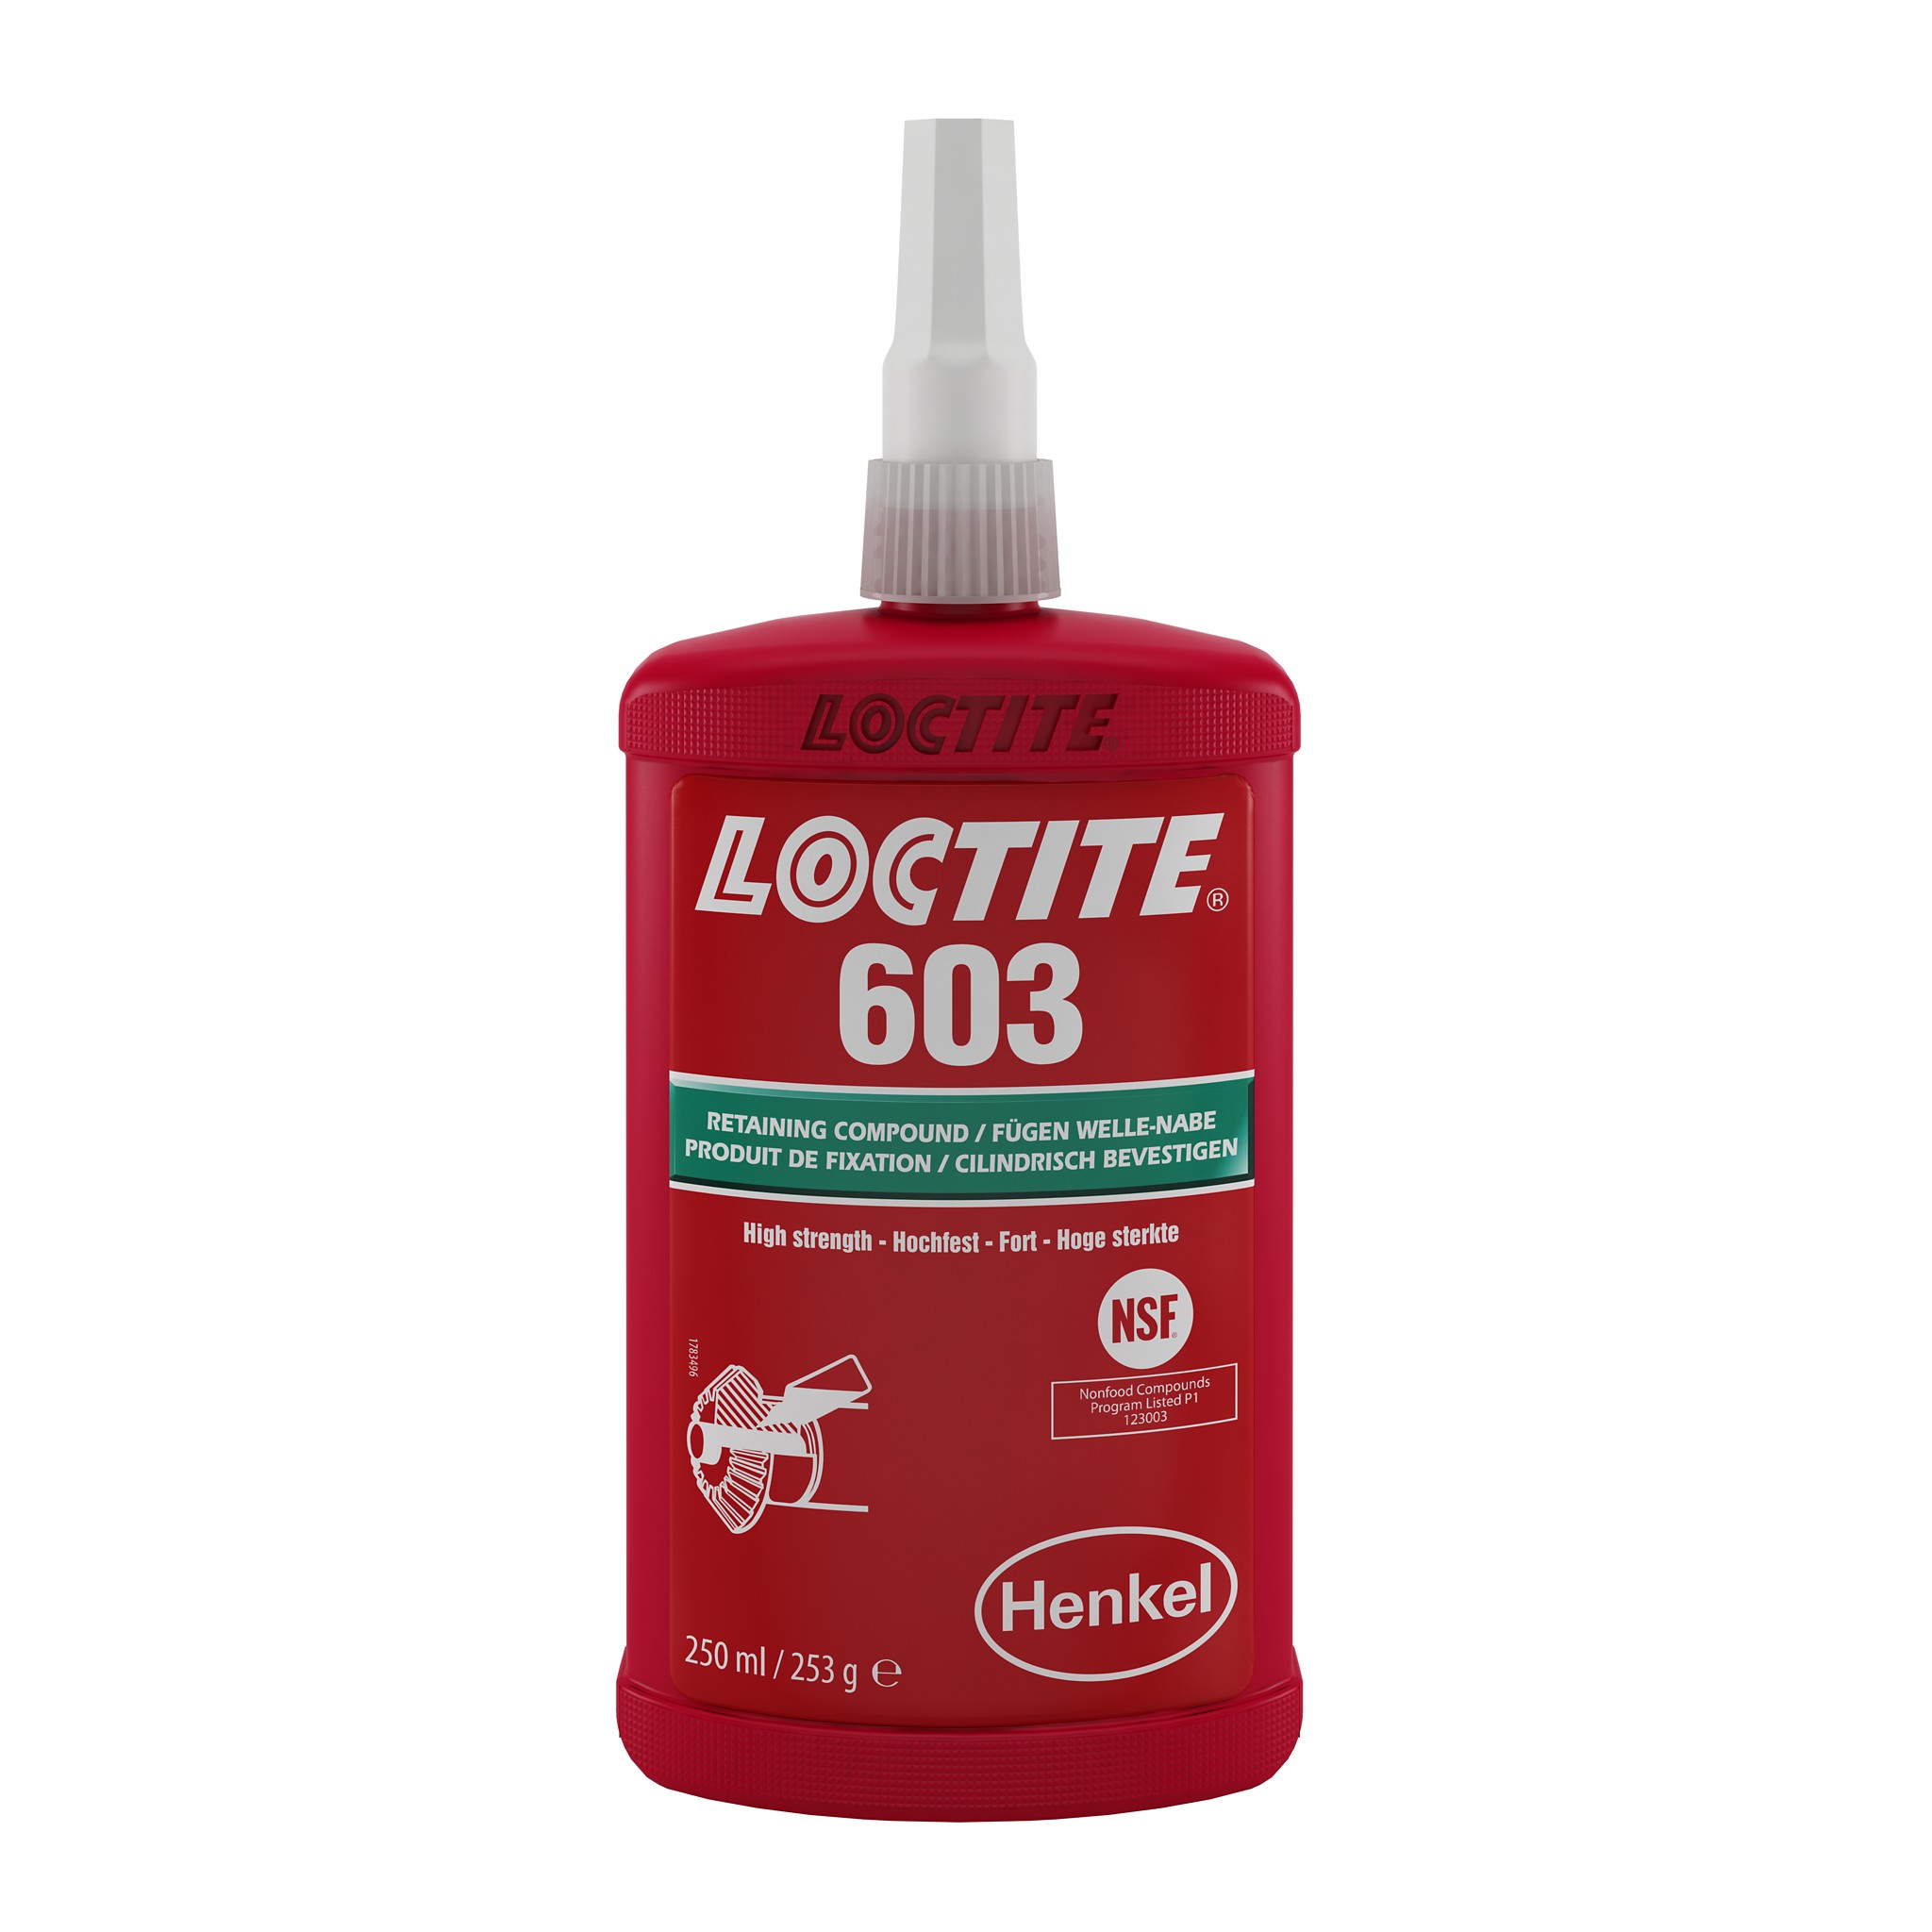 LOCTITE 603 - Fügeklebstoff - Henkel Adhesives